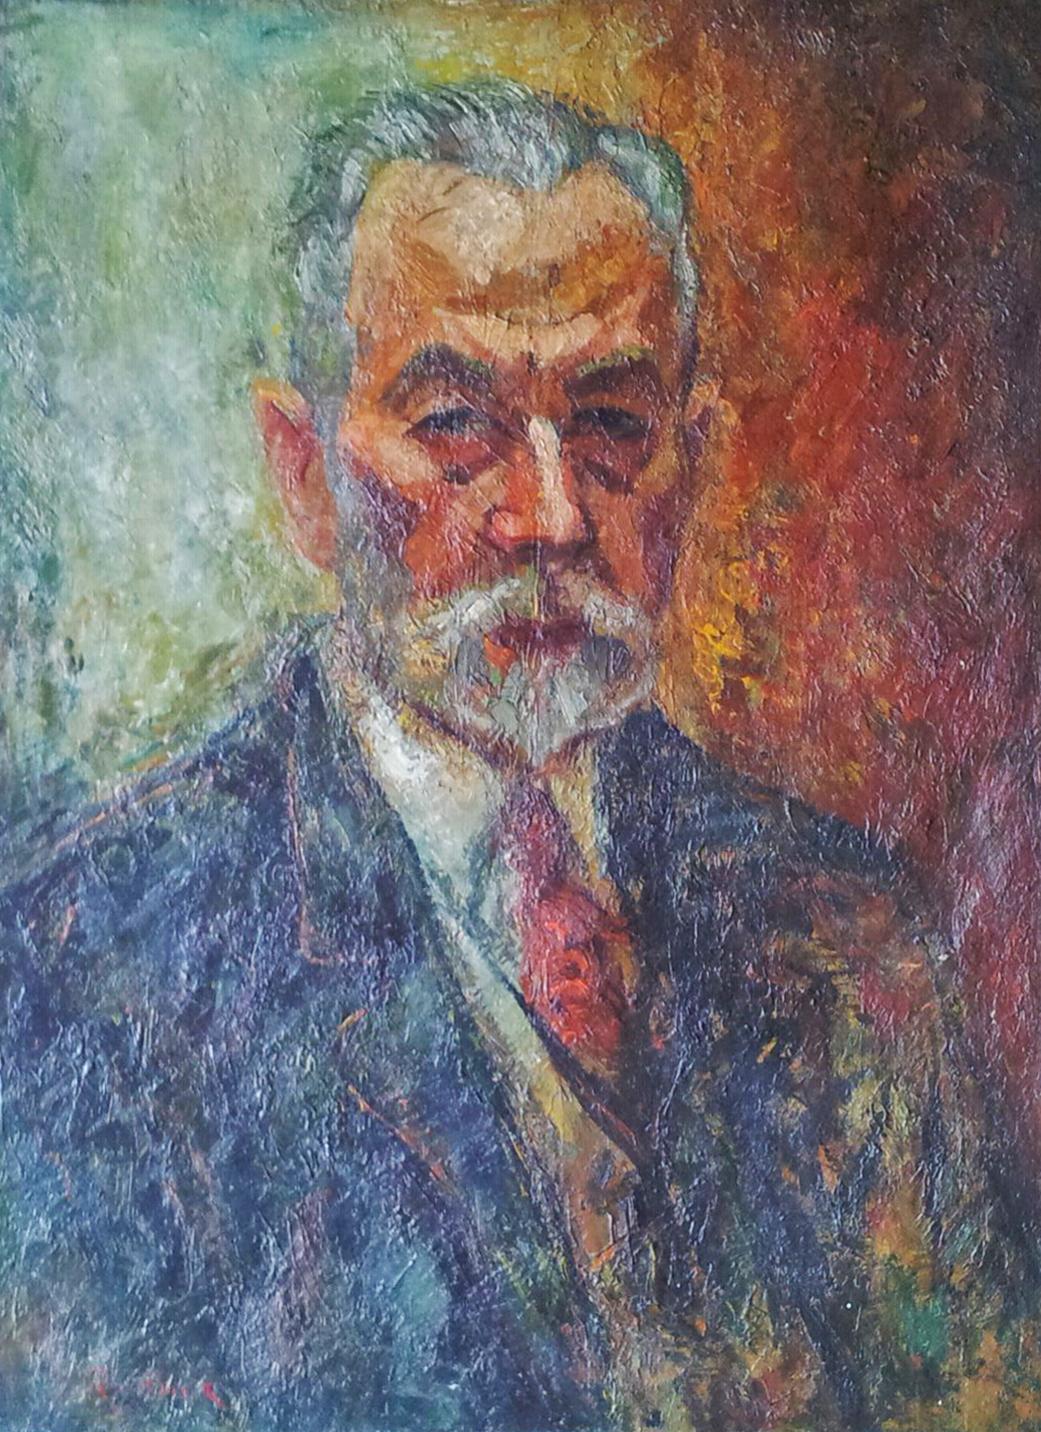 Portrait Painting Issachar Ryback - Portrait d'un homme - Peinture russe ukrainienne